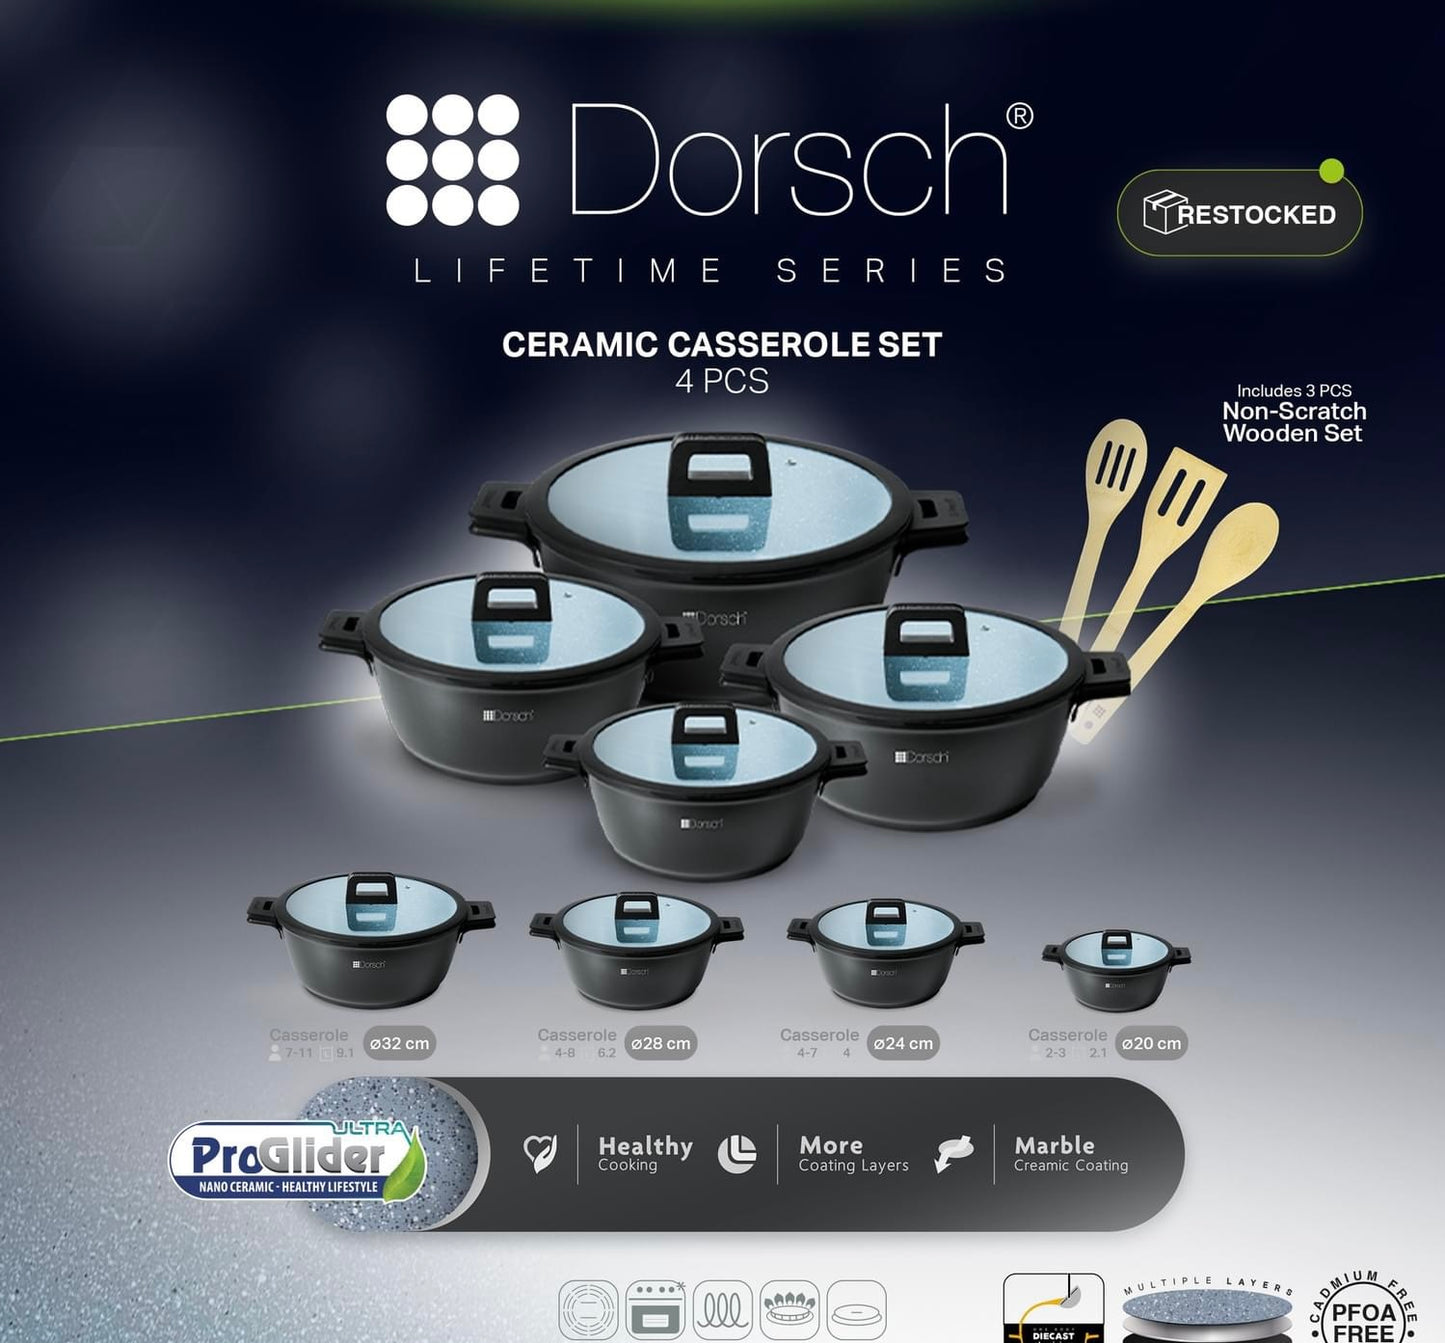 Dorsch Casserole Set – 4 Pcs $155.00